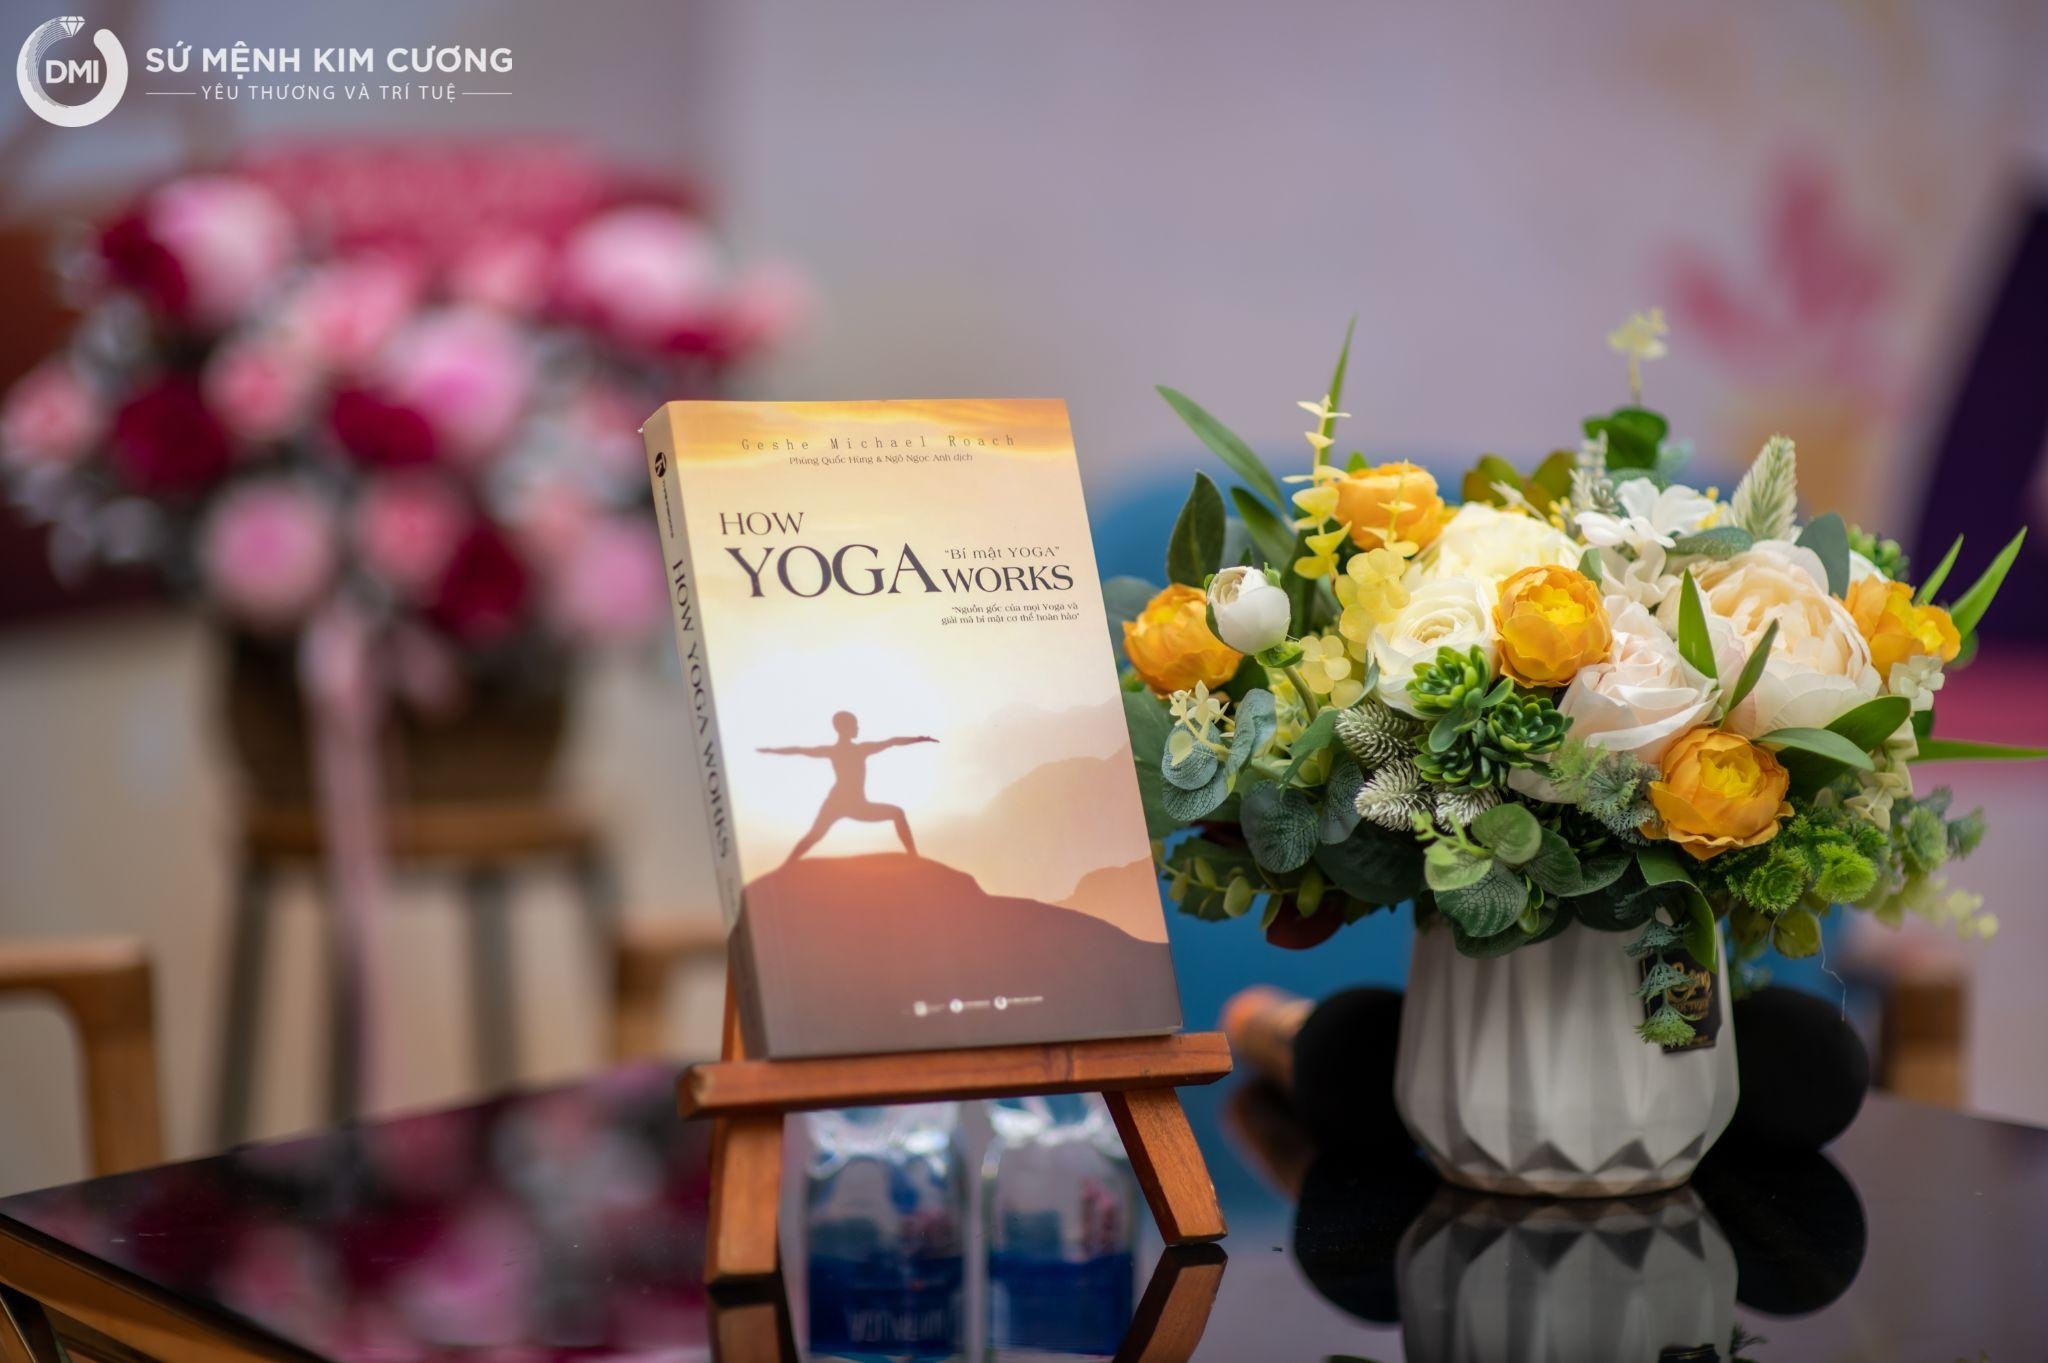 Sách "Bí mật yoga" của Geshe Michael Roach ra mắt độc giả Việt-1